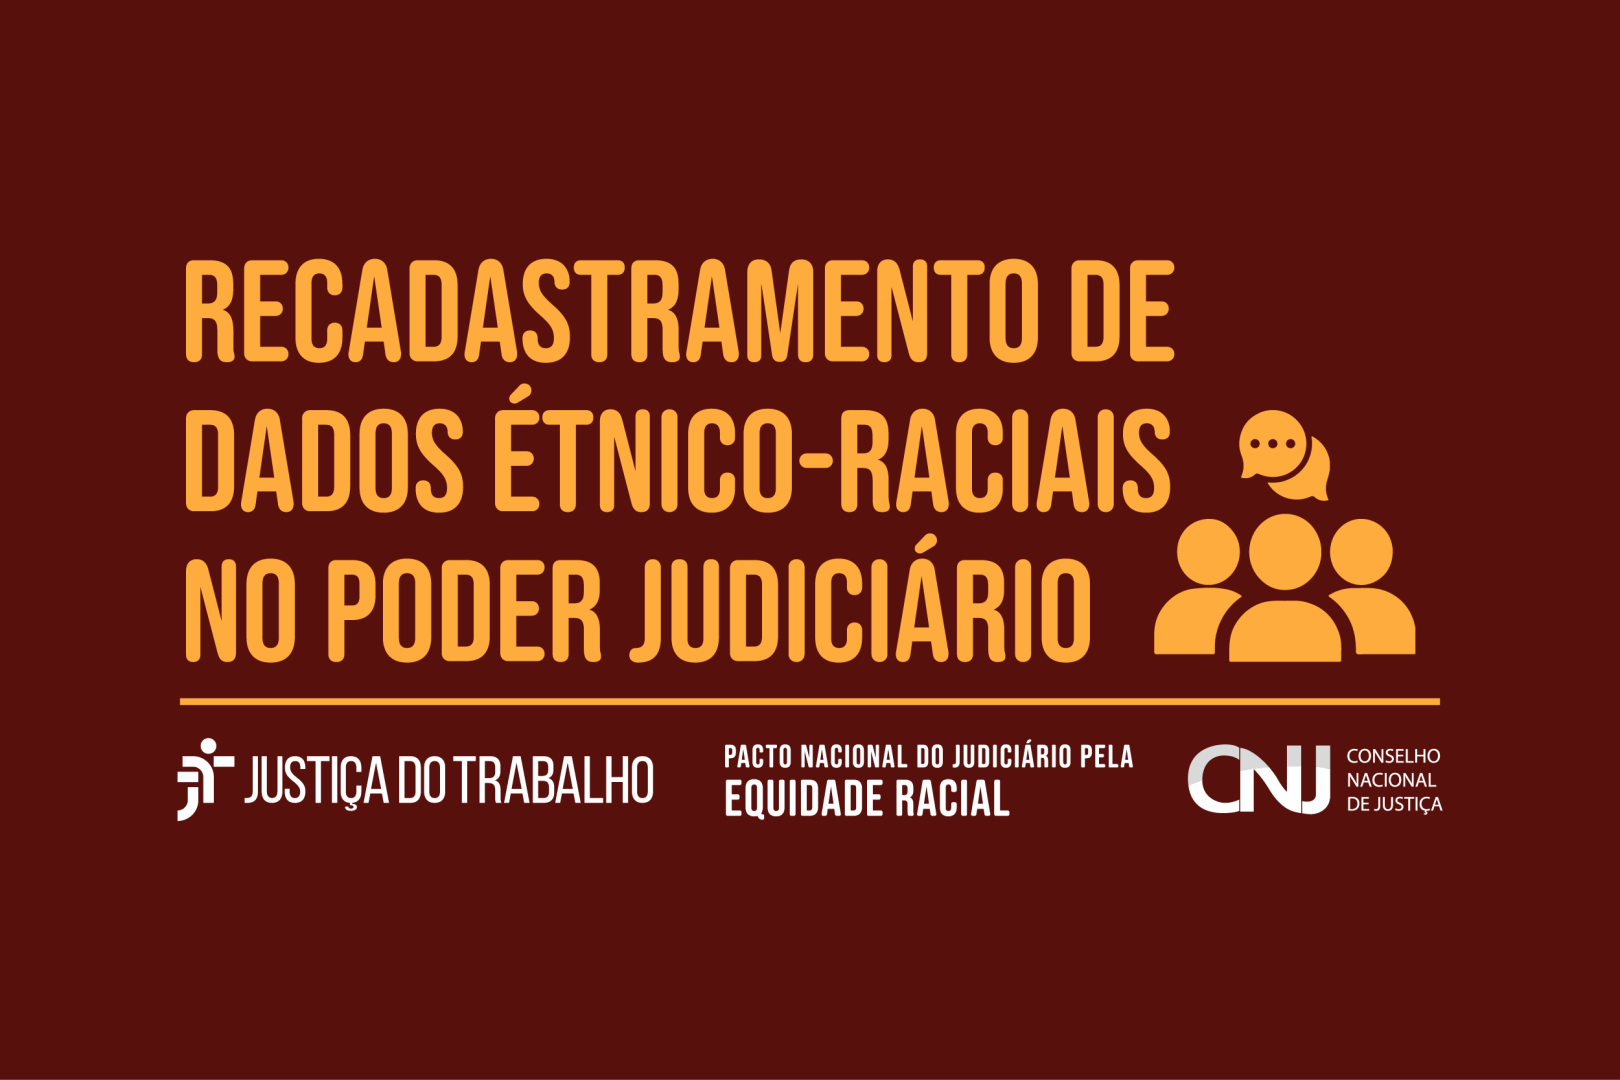 Recadastramento de dados étnico-raciais no Poder Judiciário.